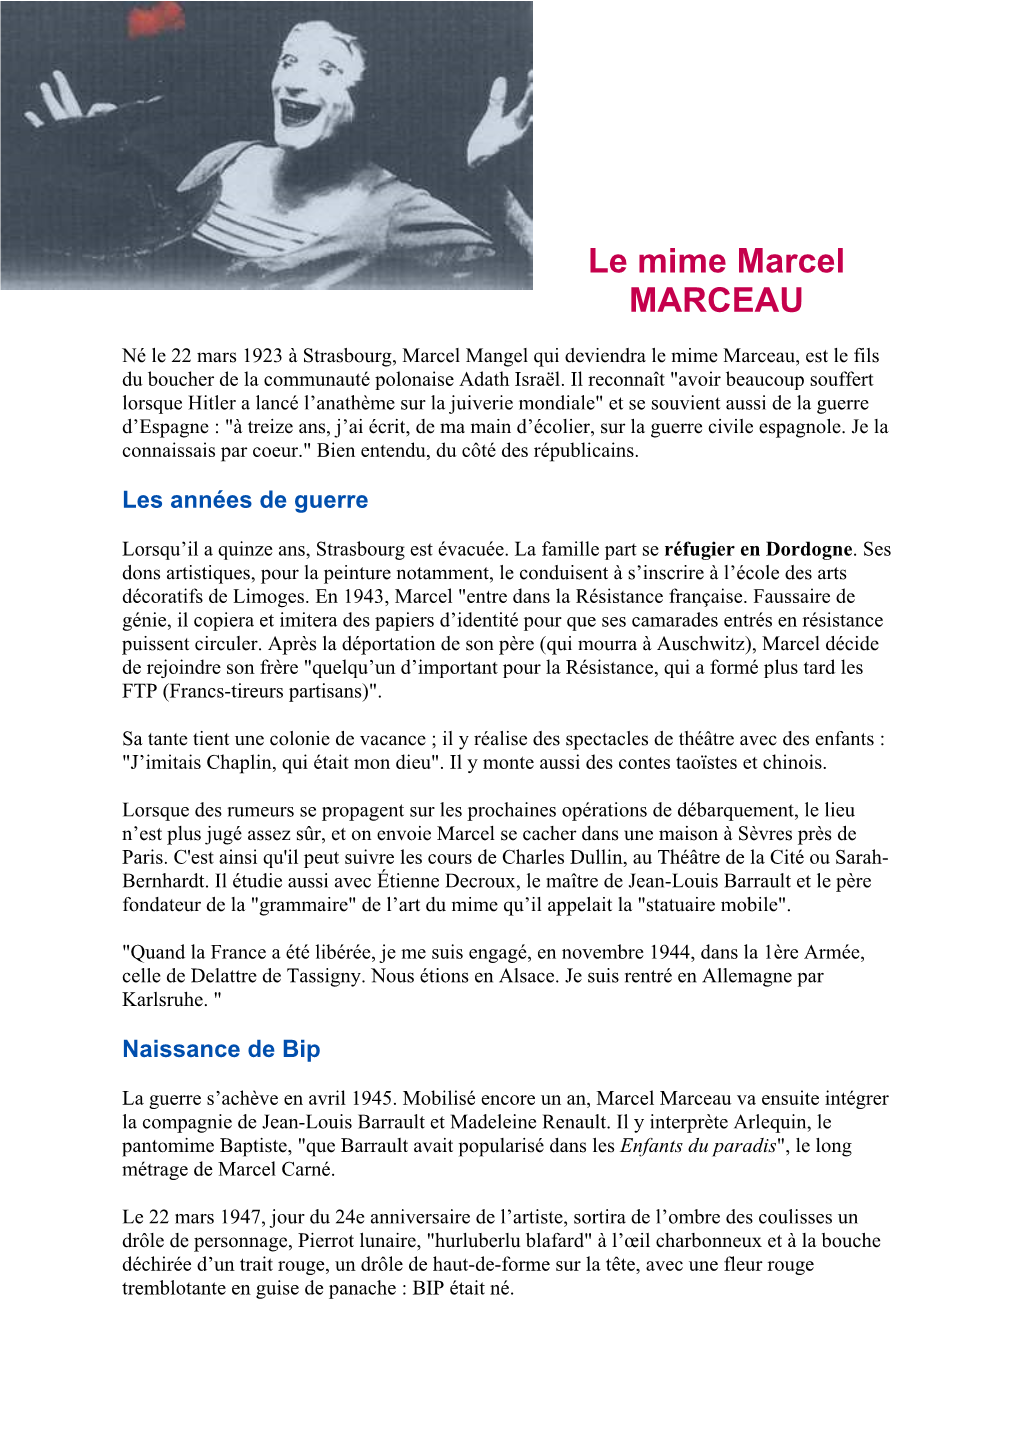 Le Mime Marcel MARCEAU